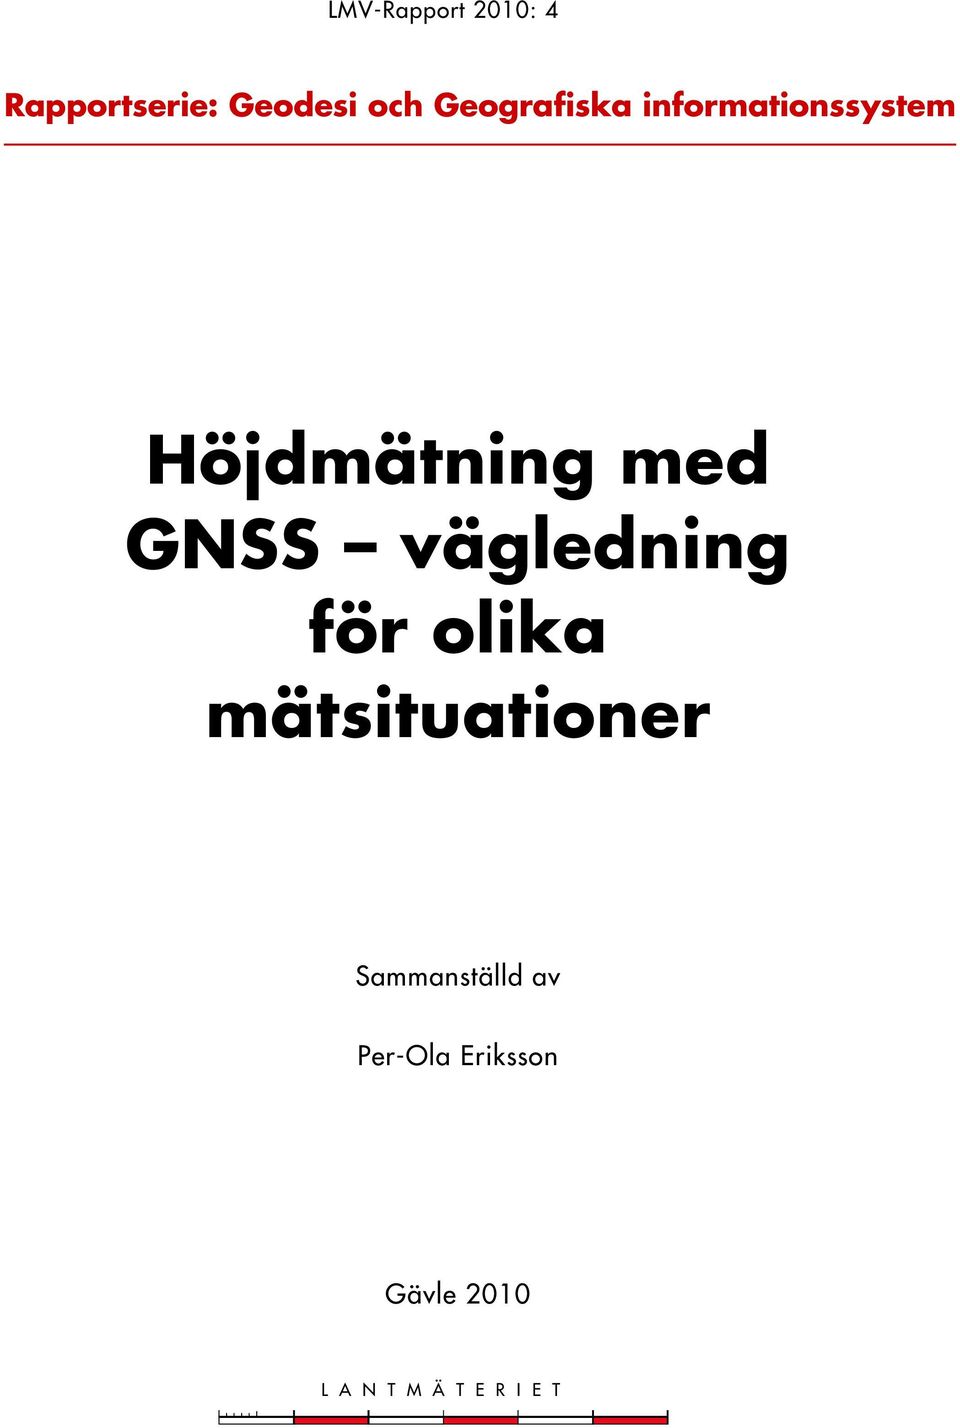 GNSS vägledning för olika mätsituationer